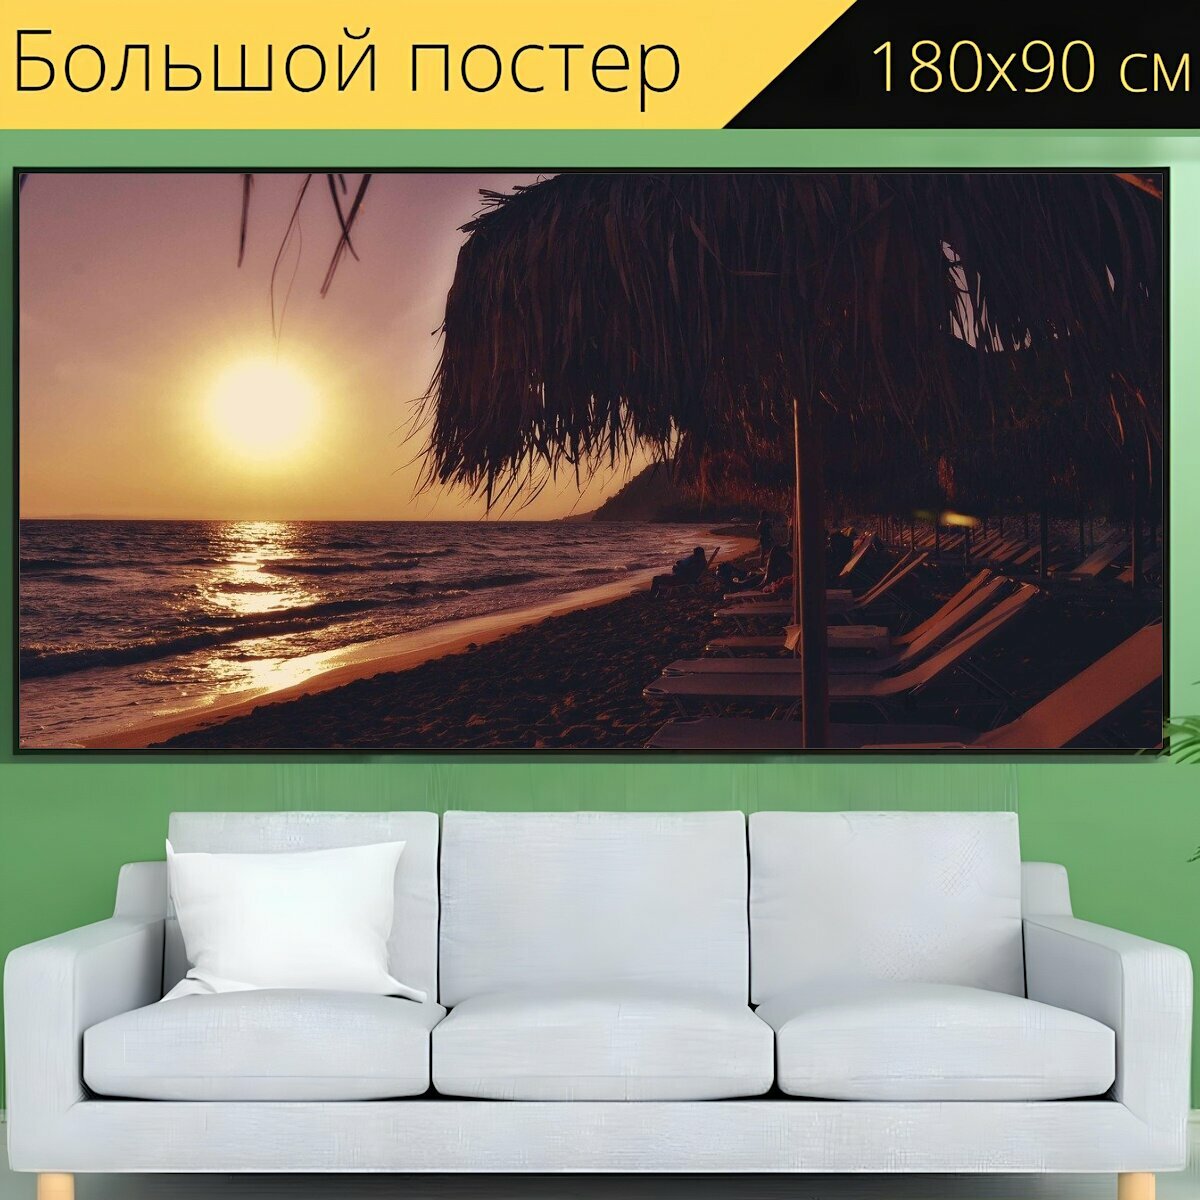 Большой постер "Закат пляж морской пейзаж, шезлонги и зонтики, приморский" 180 x 90 см. для интерьера